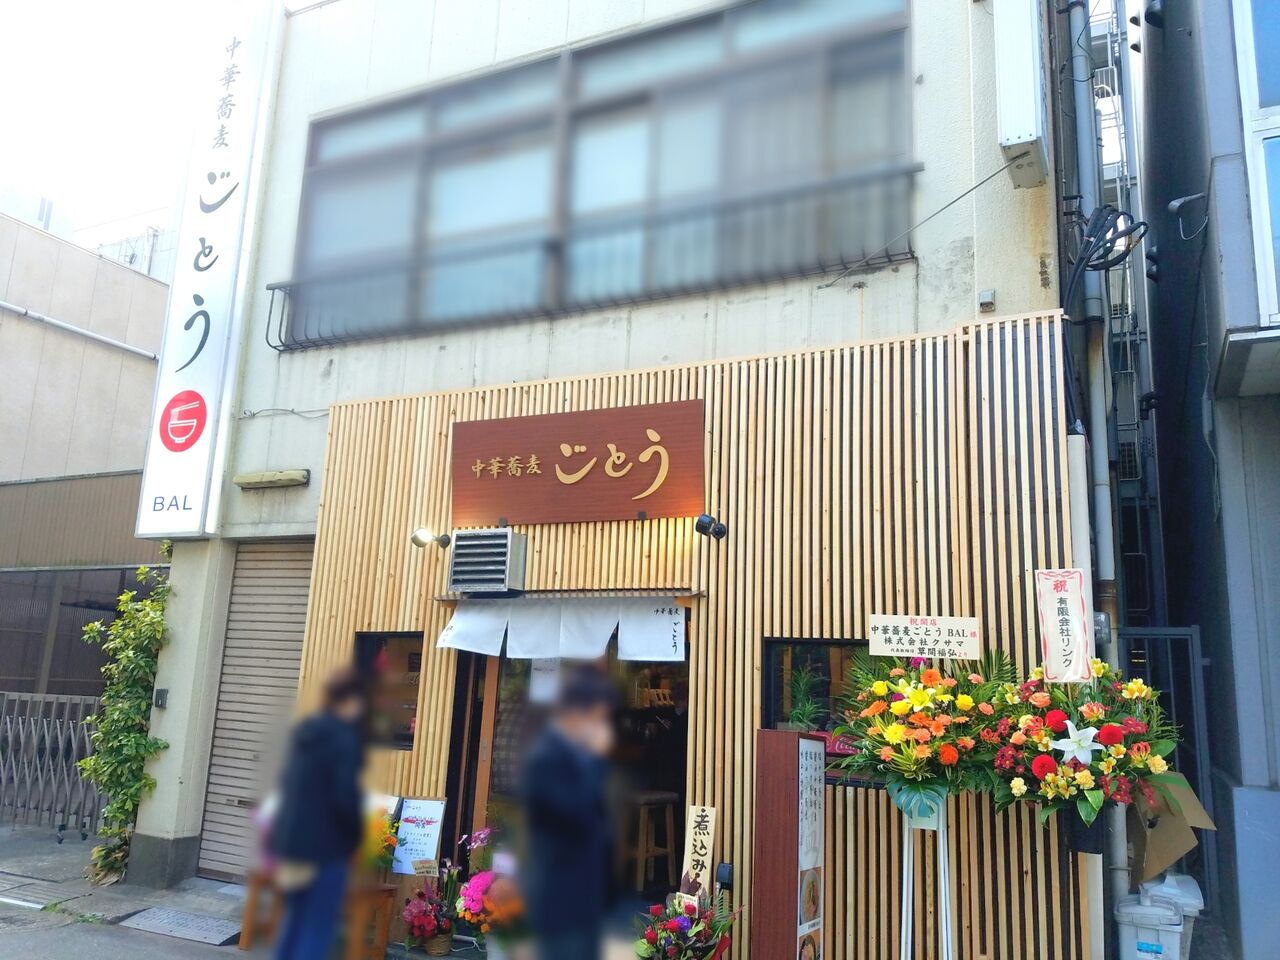 中央区富士見に 中華蕎麦 ごとう なるラーメン屋さんがオープンしたらしい ちば通信 千葉県千葉市の地域情報サイト